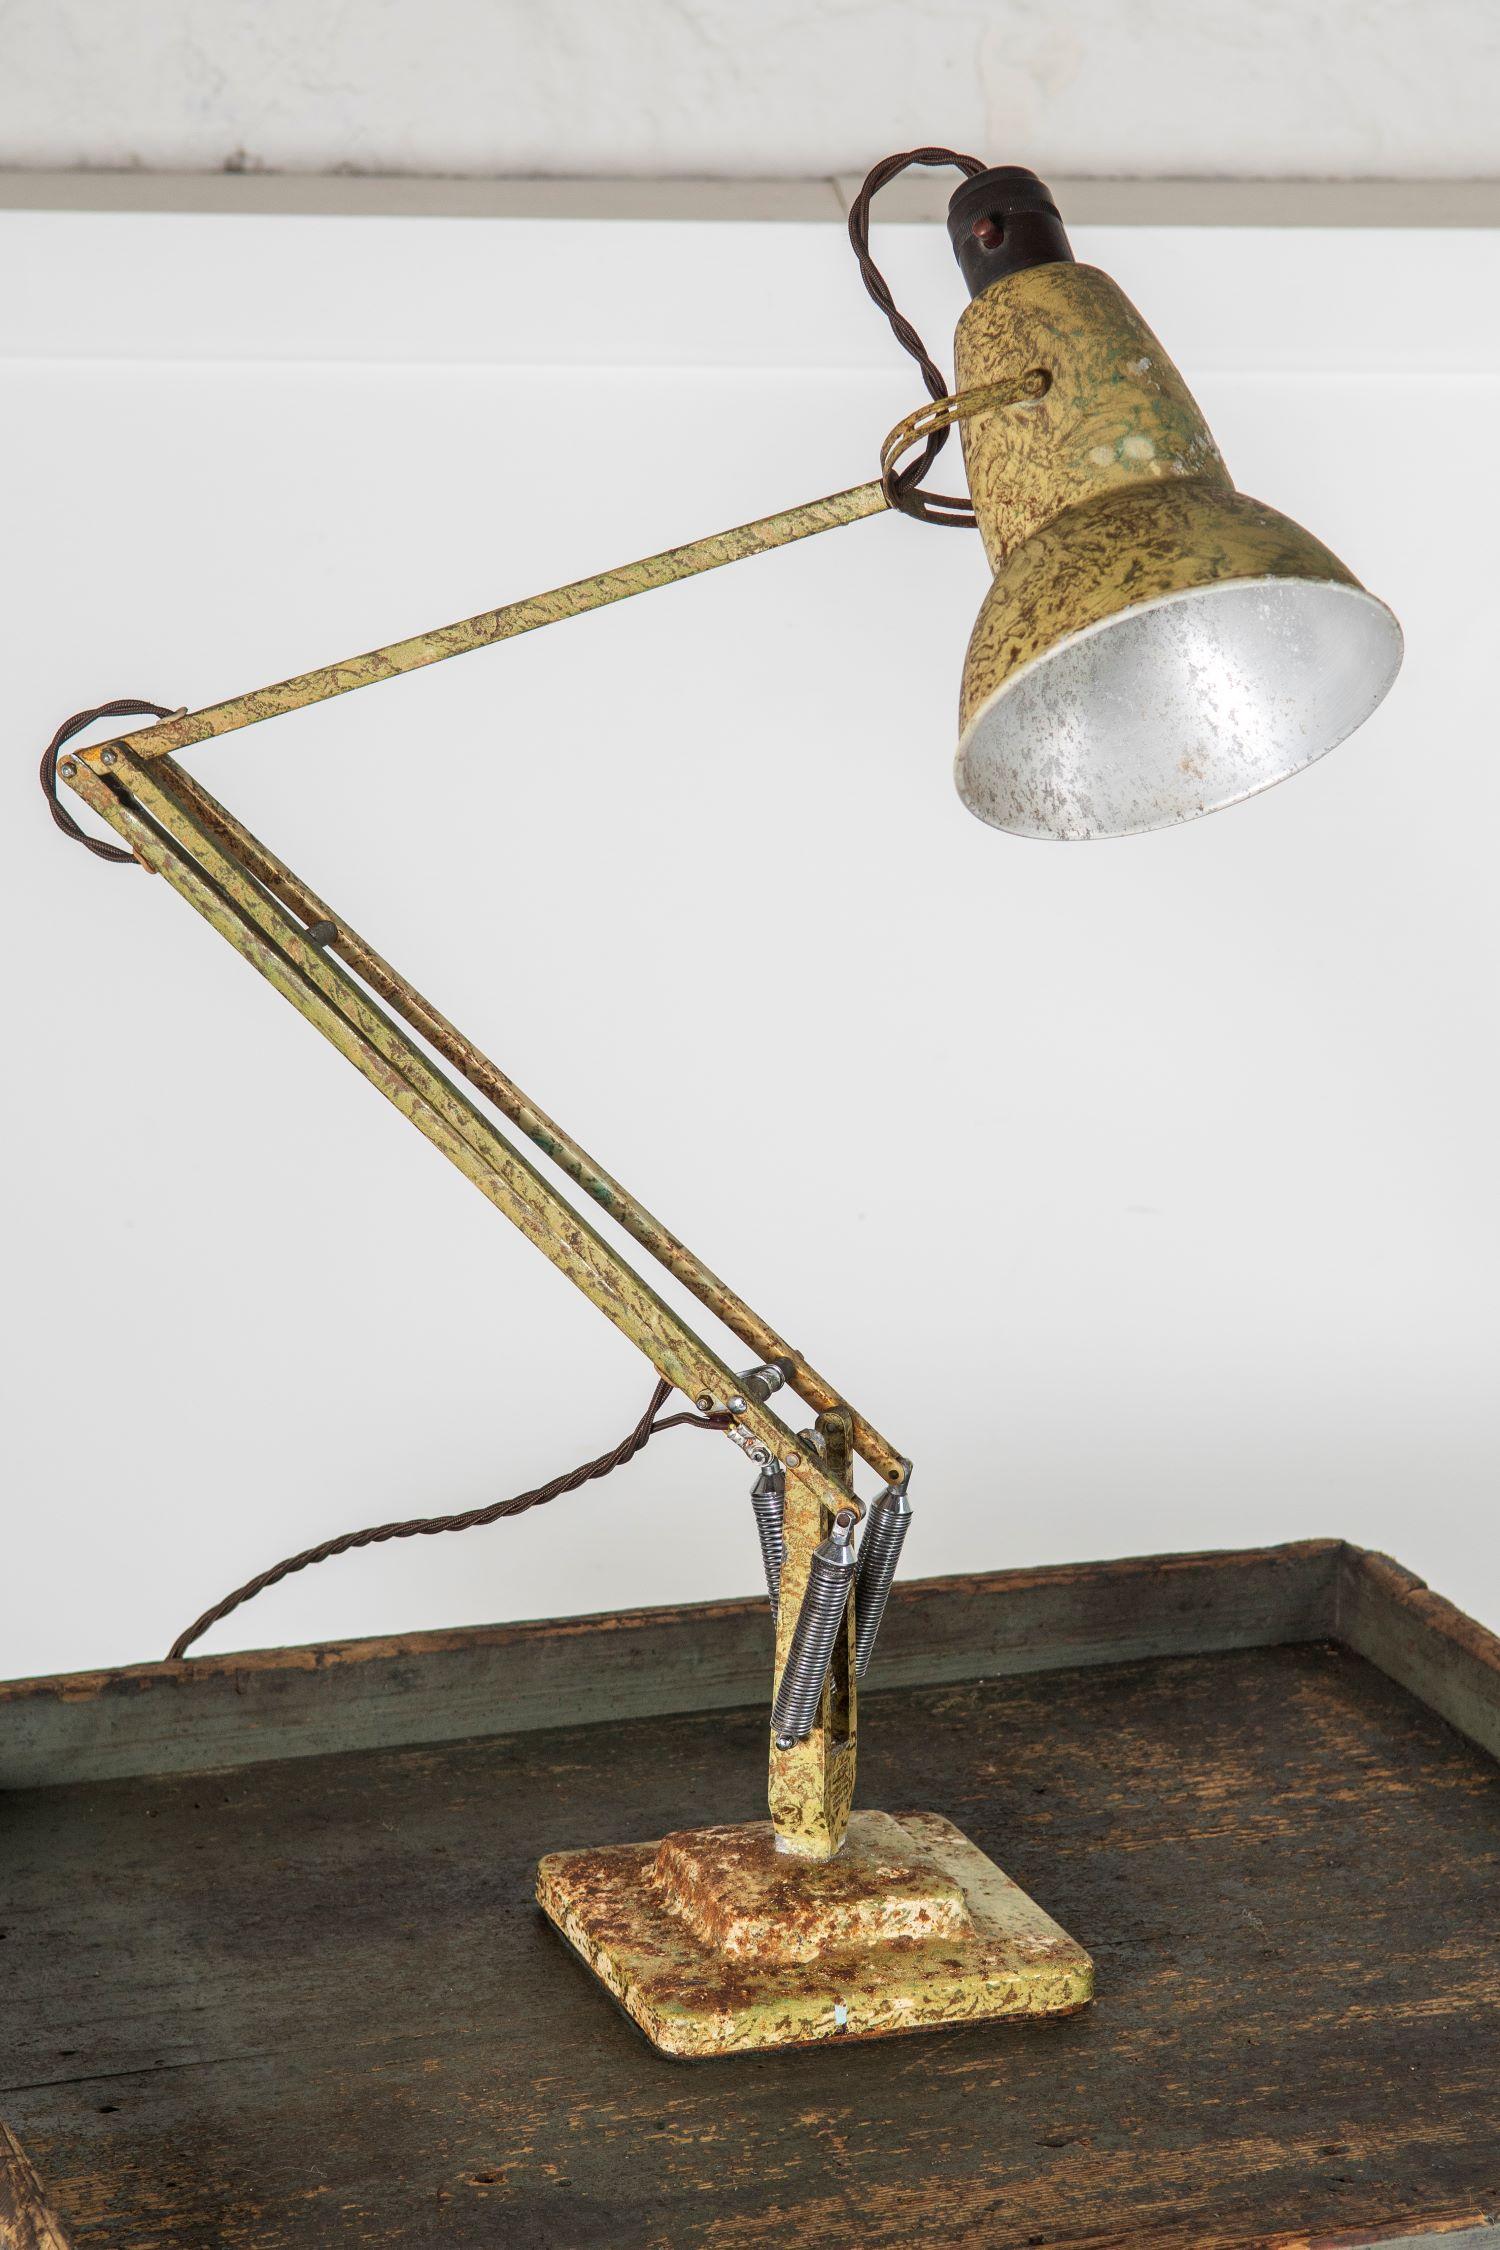 Diese frühe 2-stufige Herbert Terry Anglepoise Lampe (Modell 1227) hat den perfekten Look für alle, die etwas anderes wollen. Die Lackierung ist völlig unangetastet und befindet sich im Originalzustand. Die Lampe wurde jedoch von einem renommierten